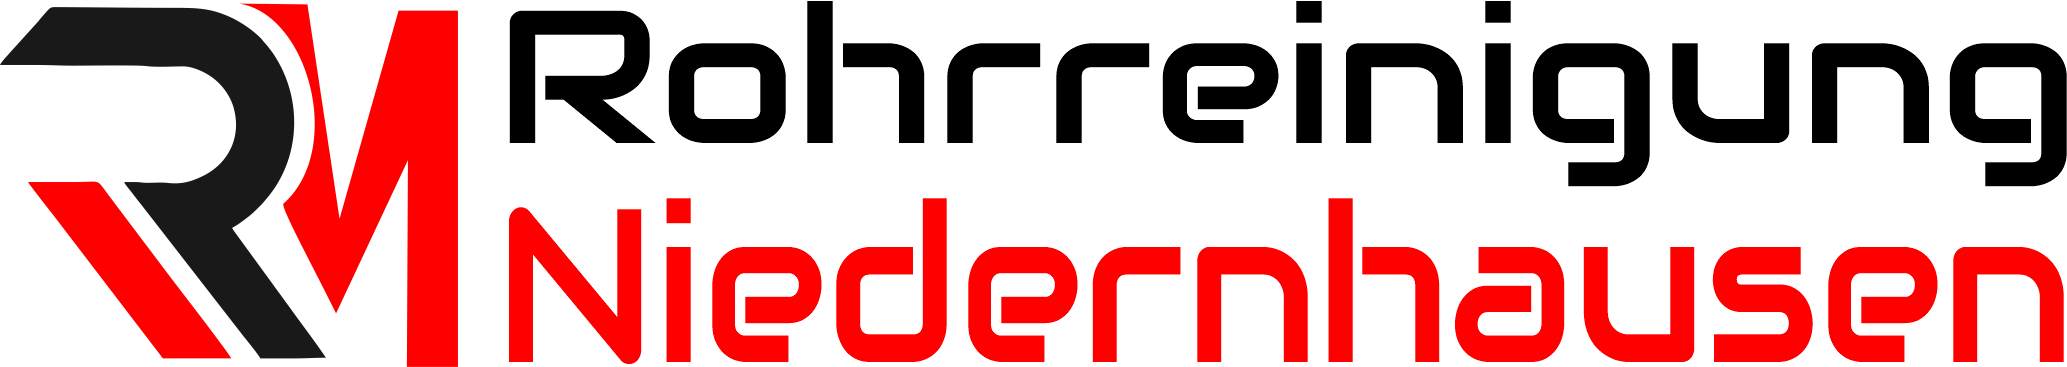 Rohrreinigung Niedernhausen Logo